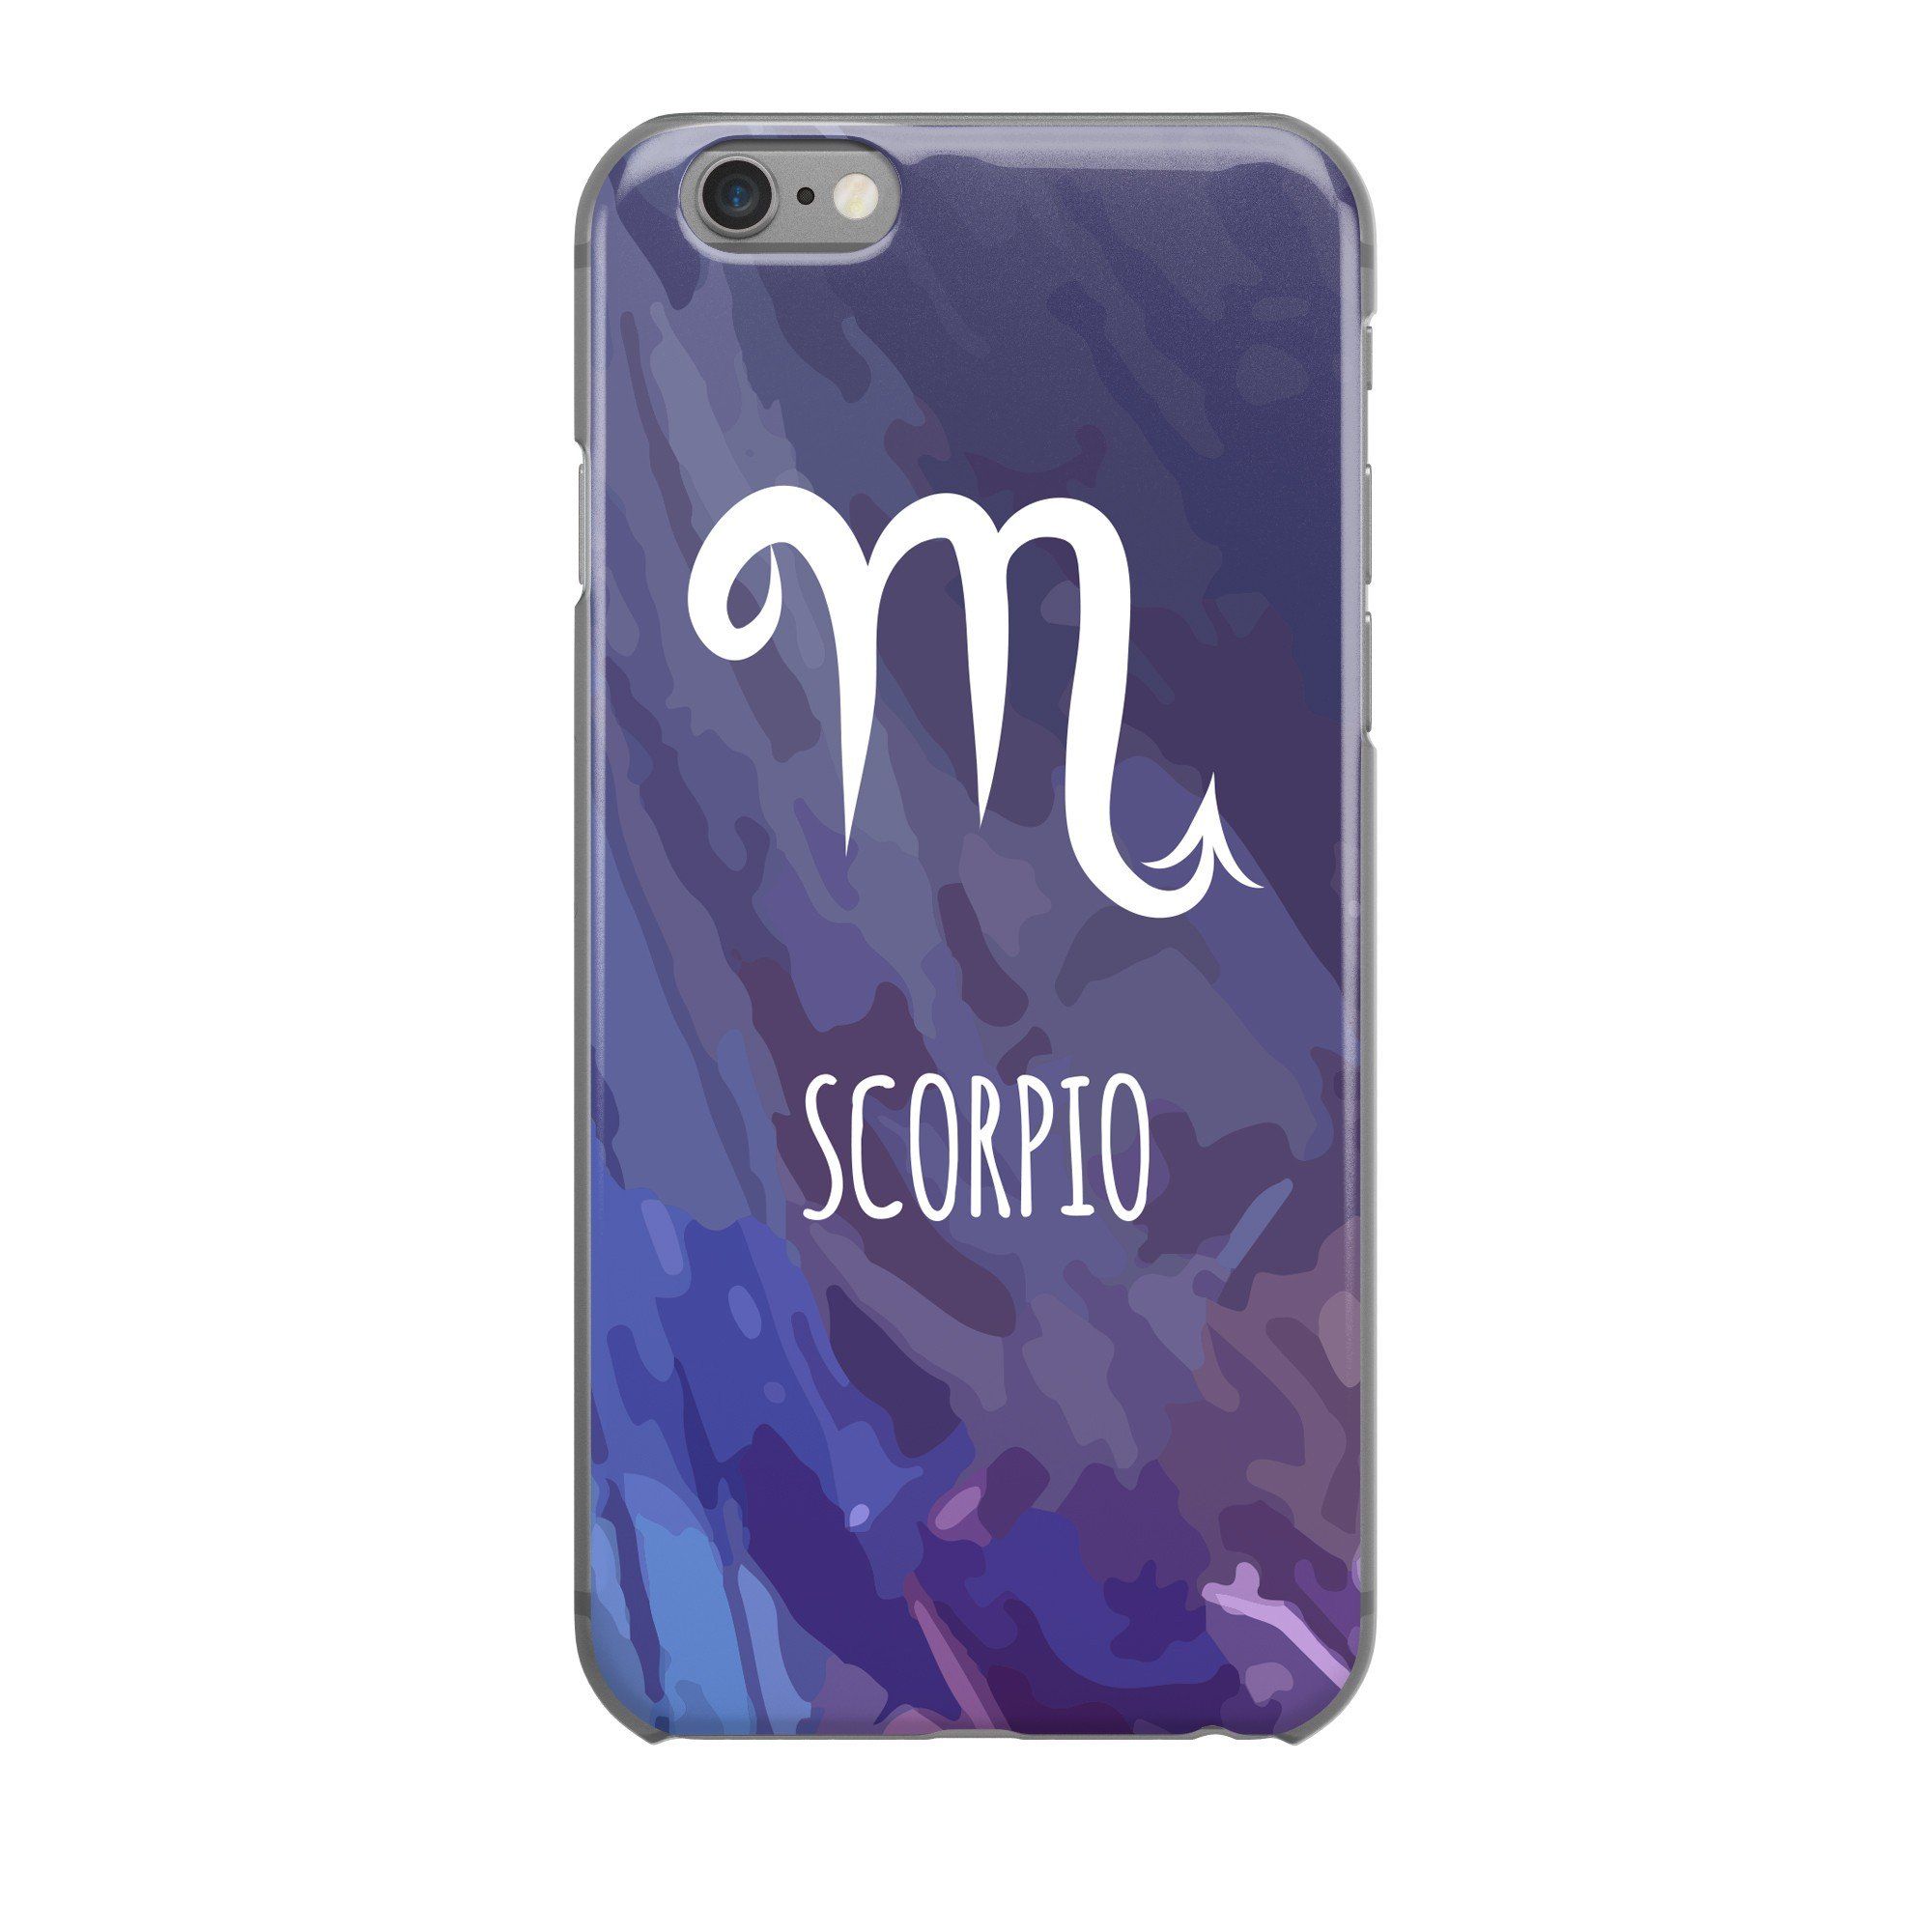  Scorpio - Iphone 6+ 